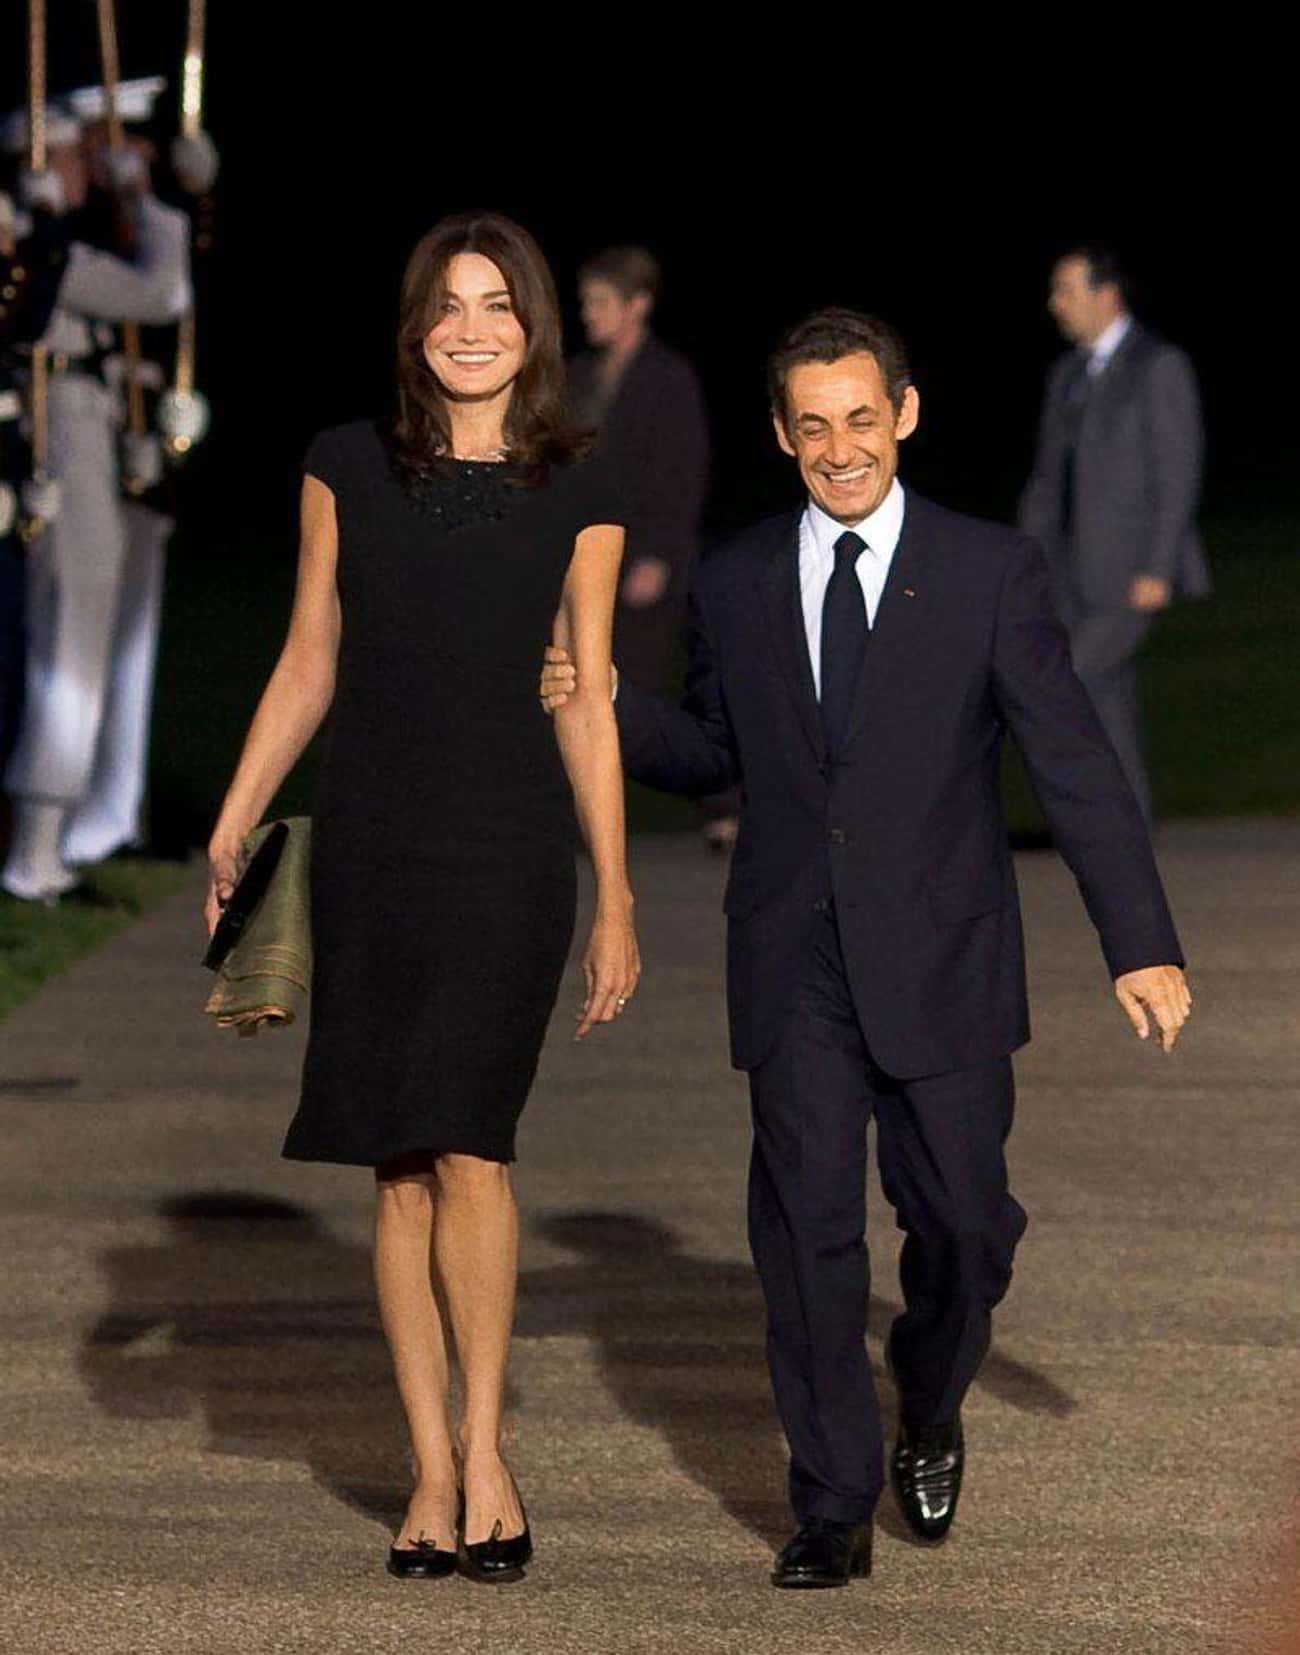 Мальчик был невысокий зато очень. Николя Саркози с женой.